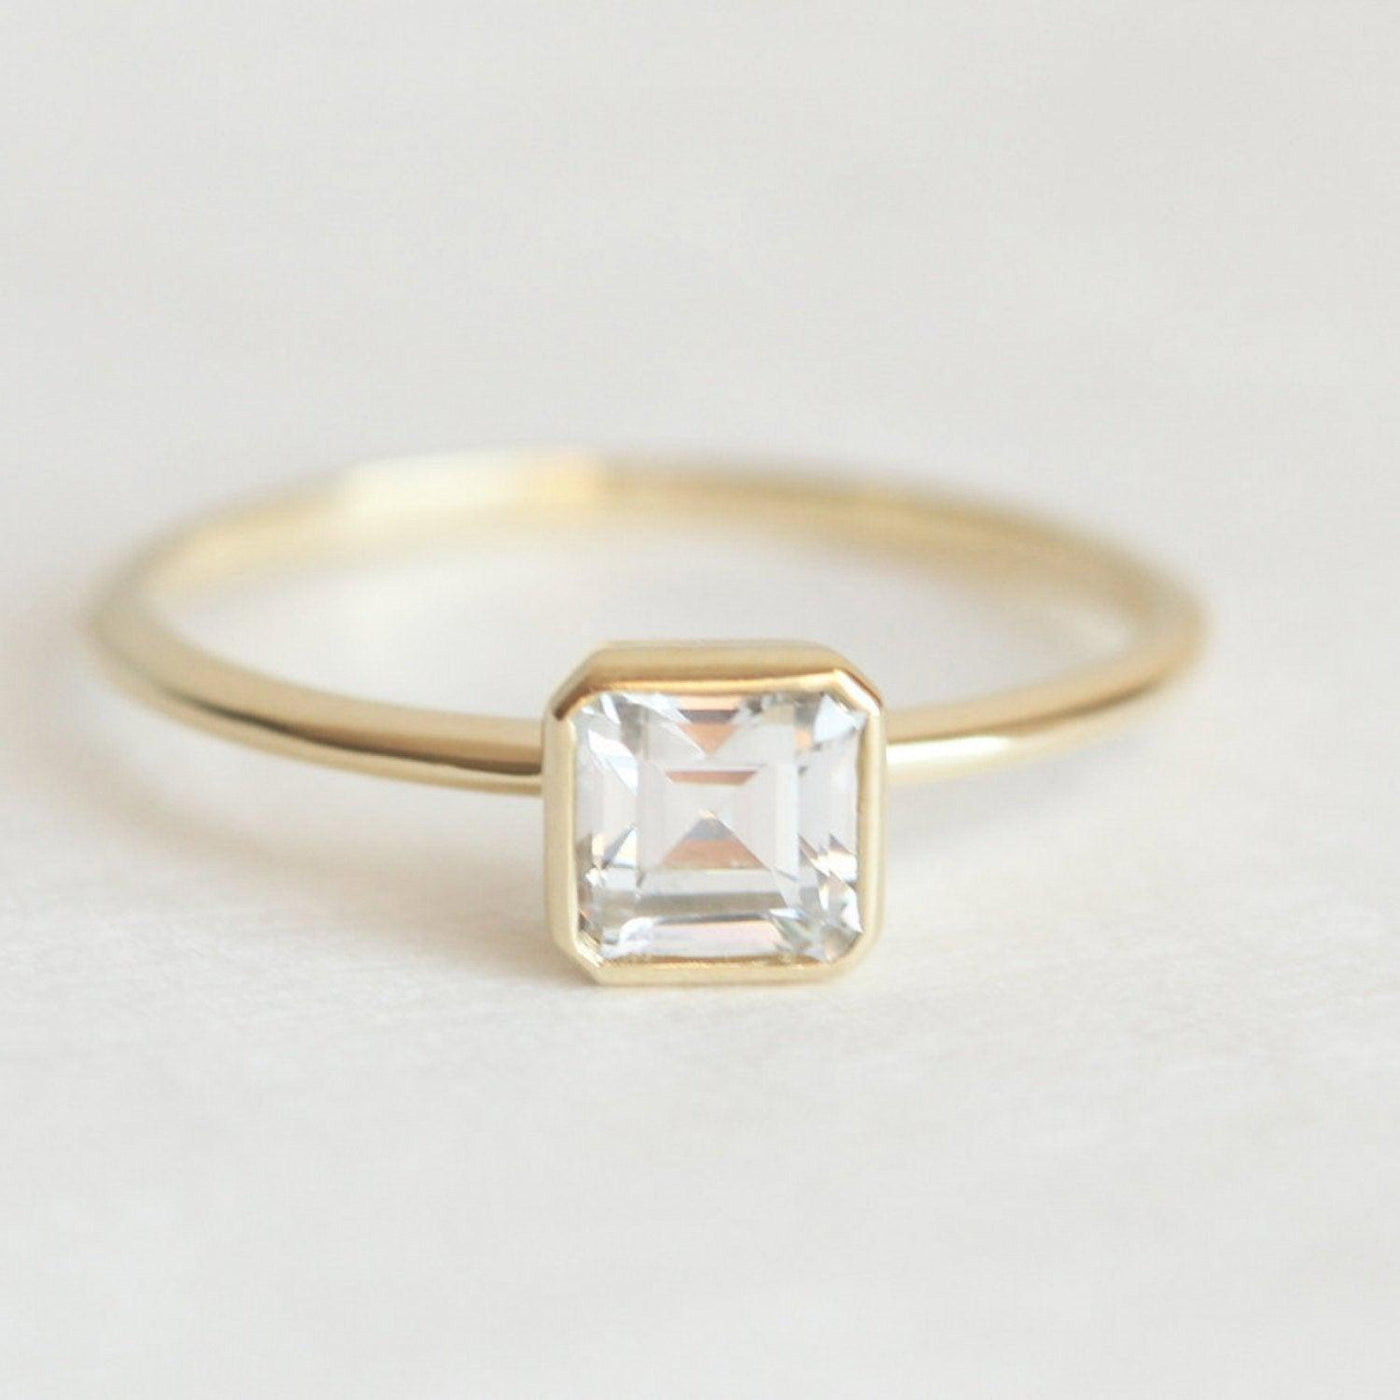 Rare Asscher Cut White Diamond Solitaire Bezel Setting Ring